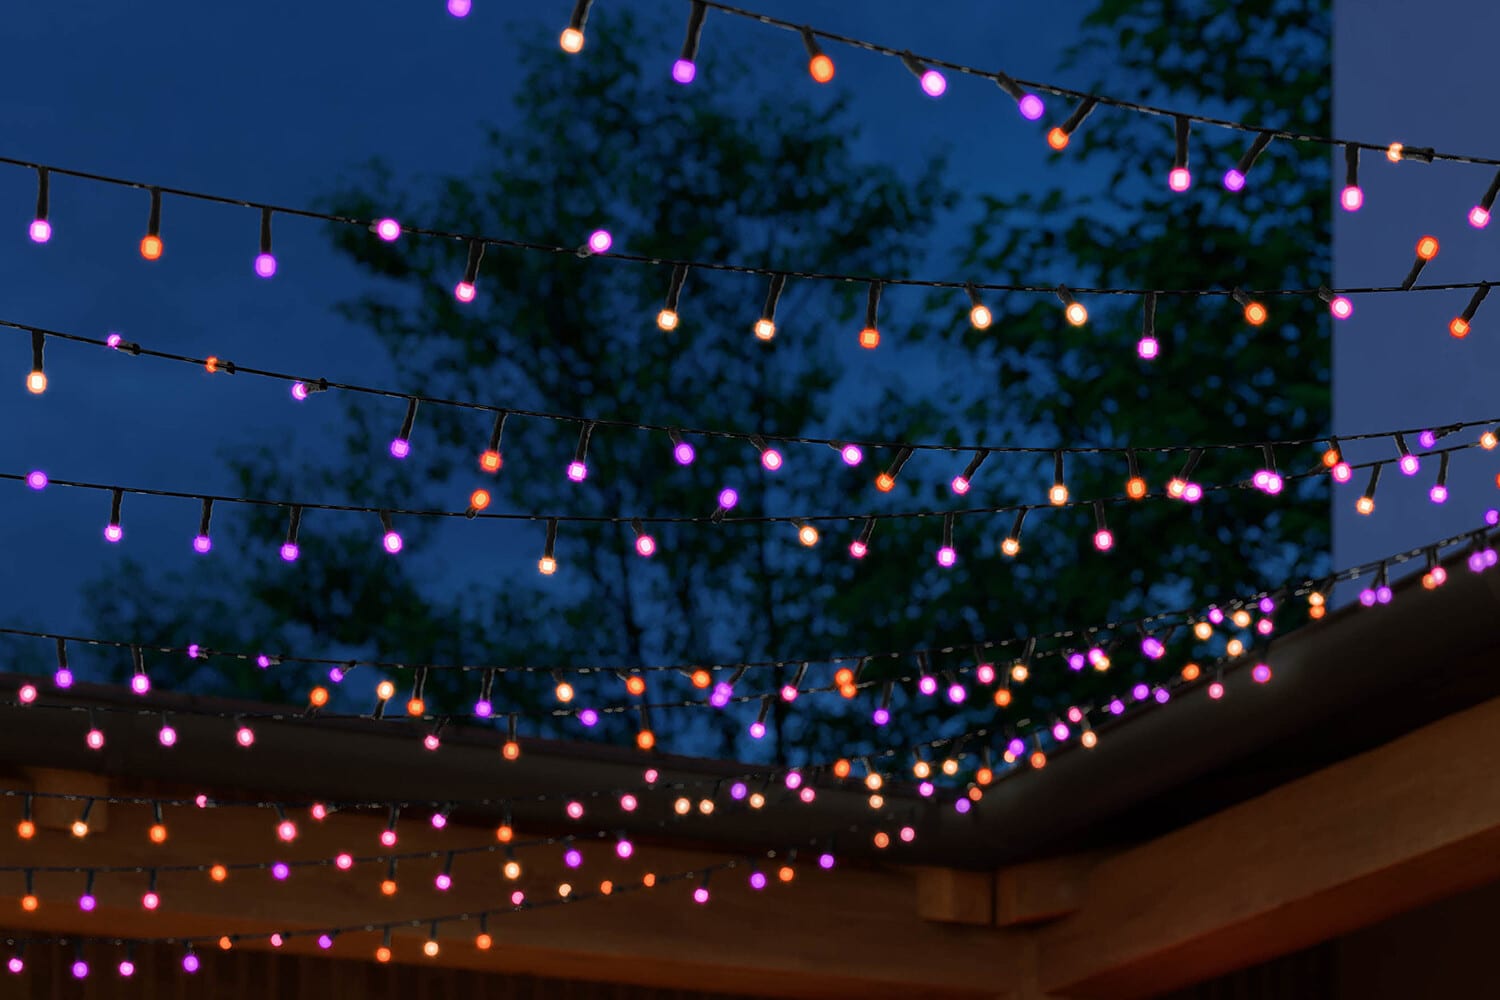 Hueblog: Have you packed away your Hue Festavia string lights yet?